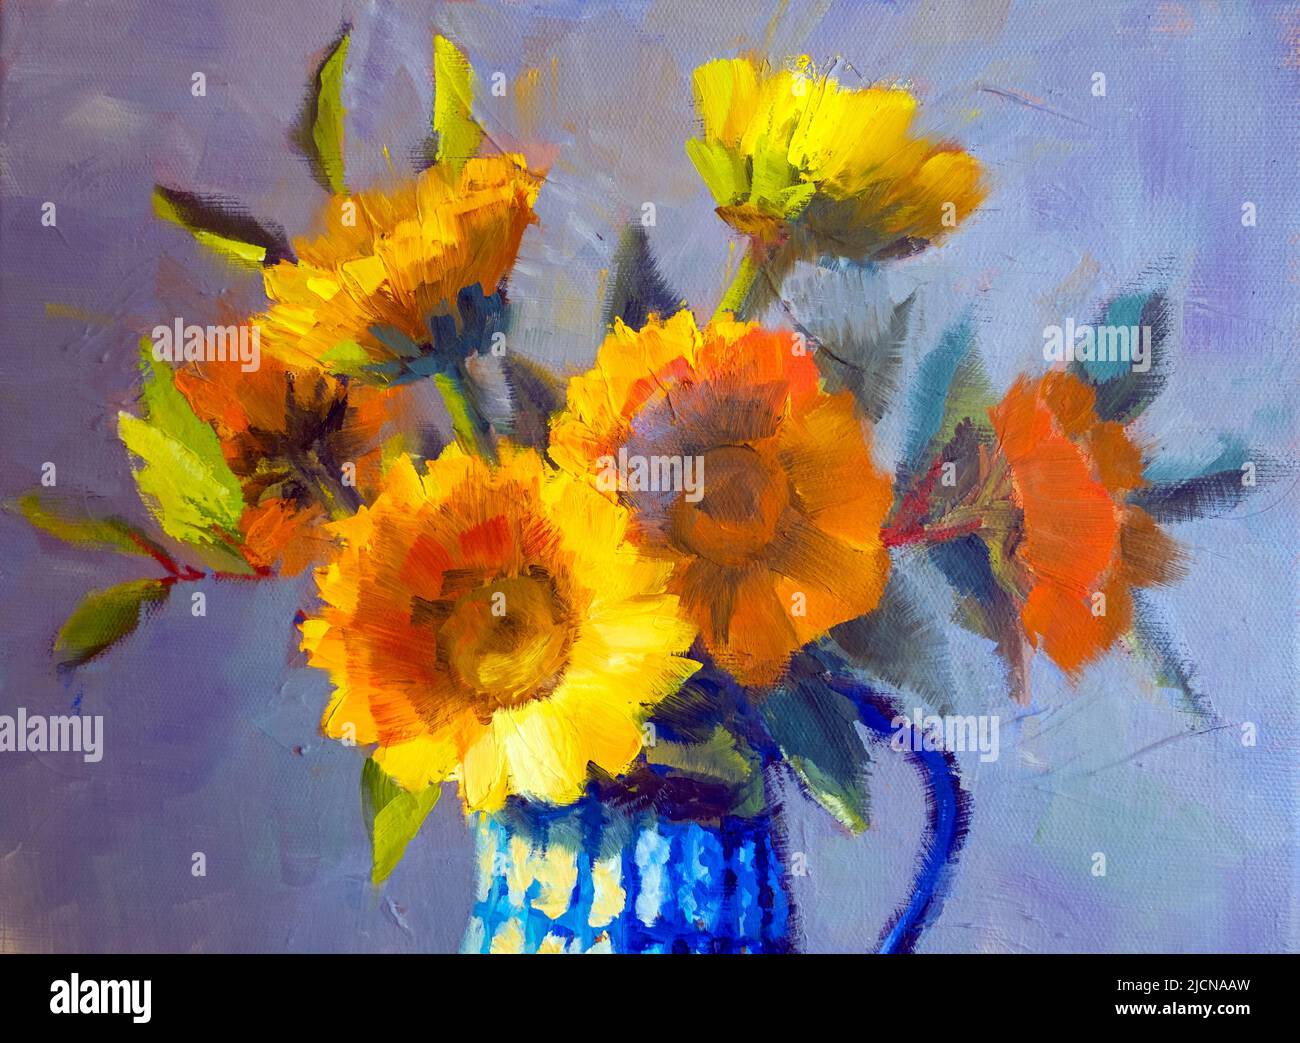 Bouquet de tournesol, huile de peinture impressionniste sur toile. Tournesols dans un vase japonais sur une nappe Banque D'Images